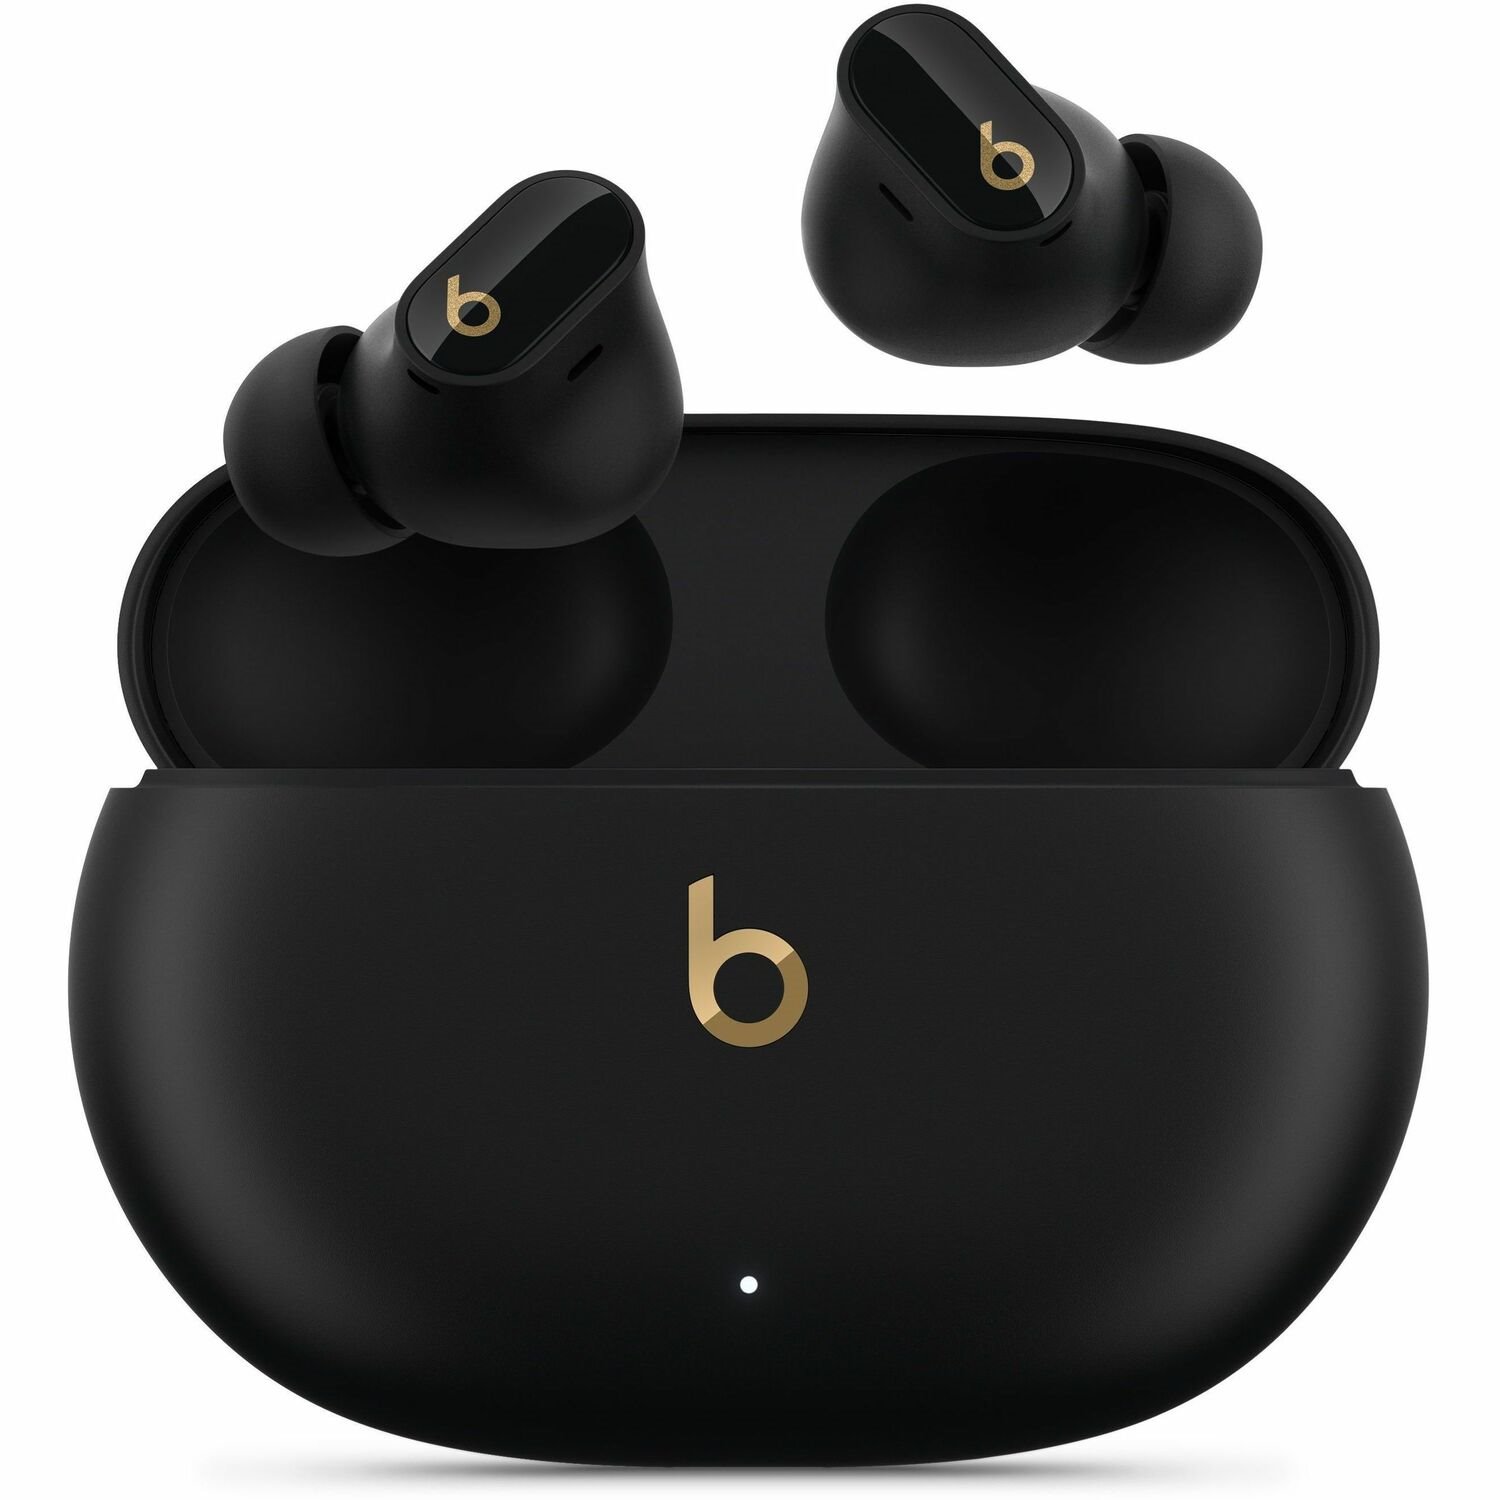 Apple Beats Studio Buds + True Wireless Earbud Stereo Earset - Black, Gold